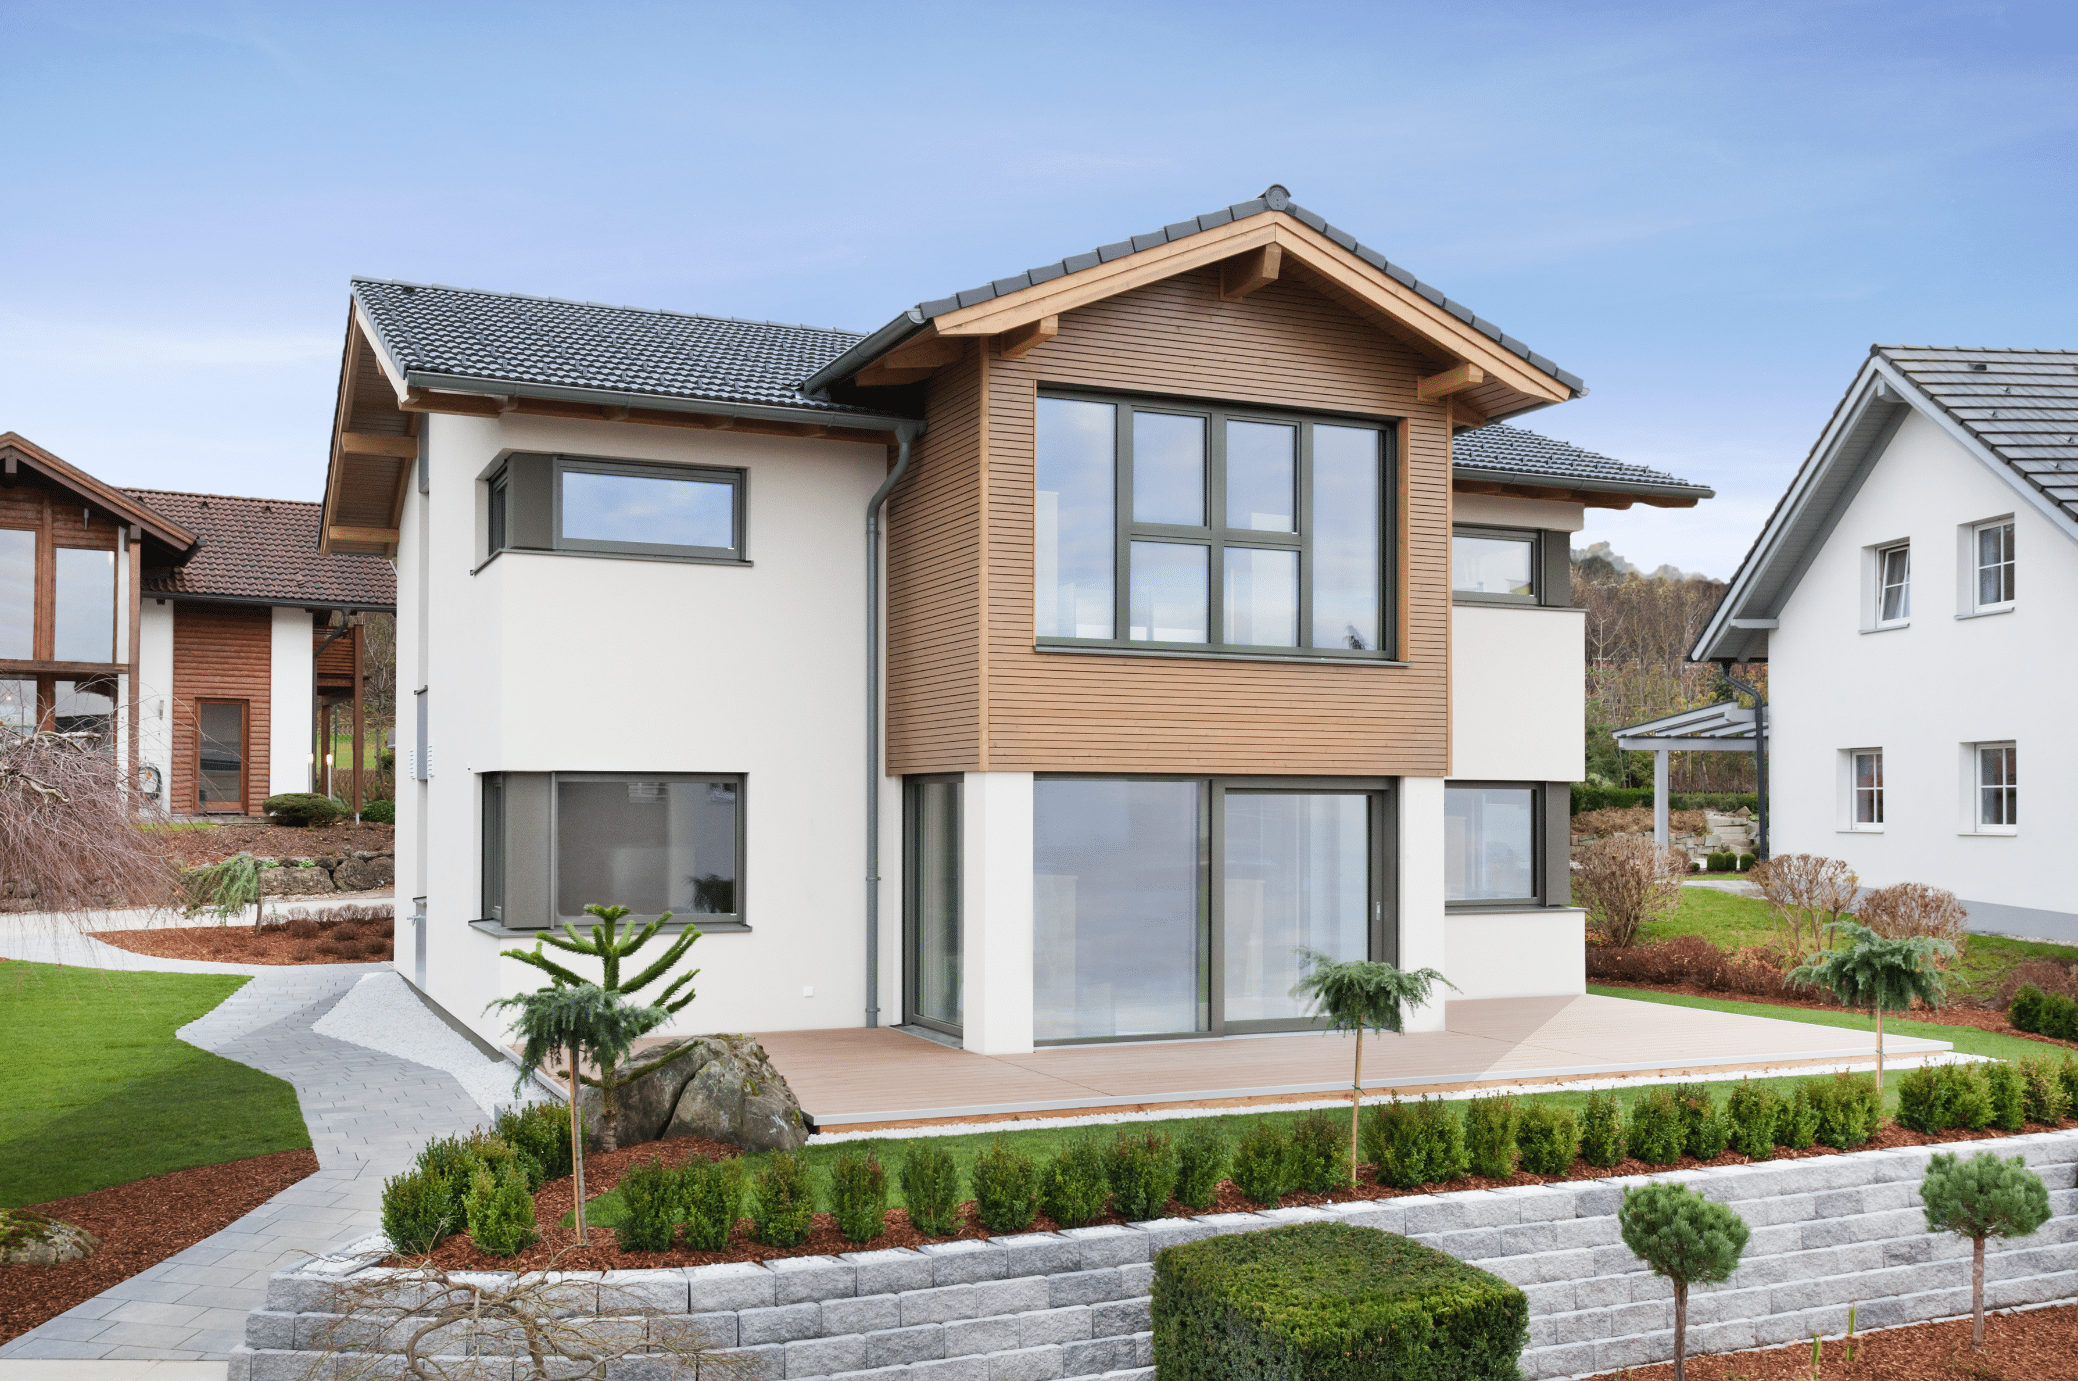 Hartl Haus zeigt ein helles Einfamilienhaus mit Holzverkleidung, Terrasse und gepflegtem Vorgarten mit Zugang zum Haus aus Steinplatten und niedriger Mauer.